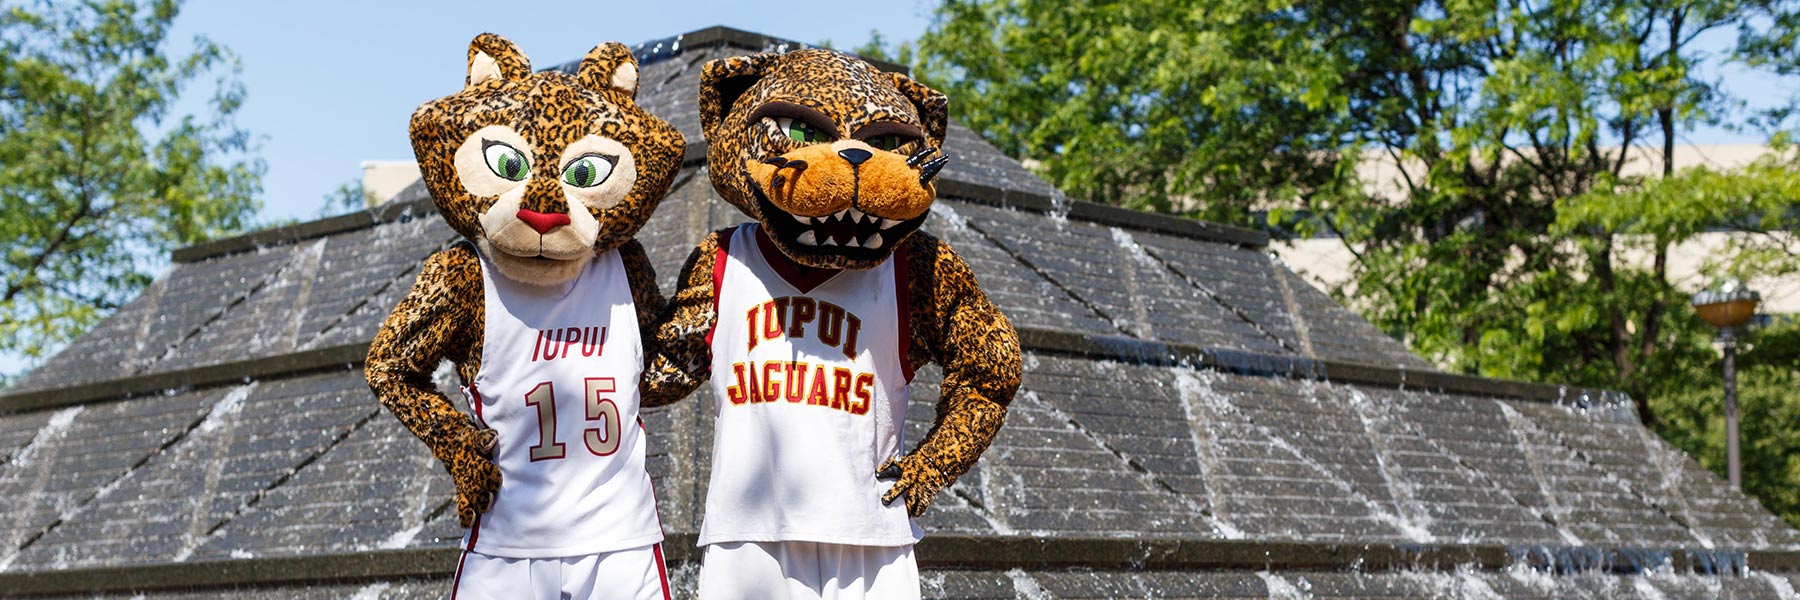 The jaguar mascots pose for a photo.